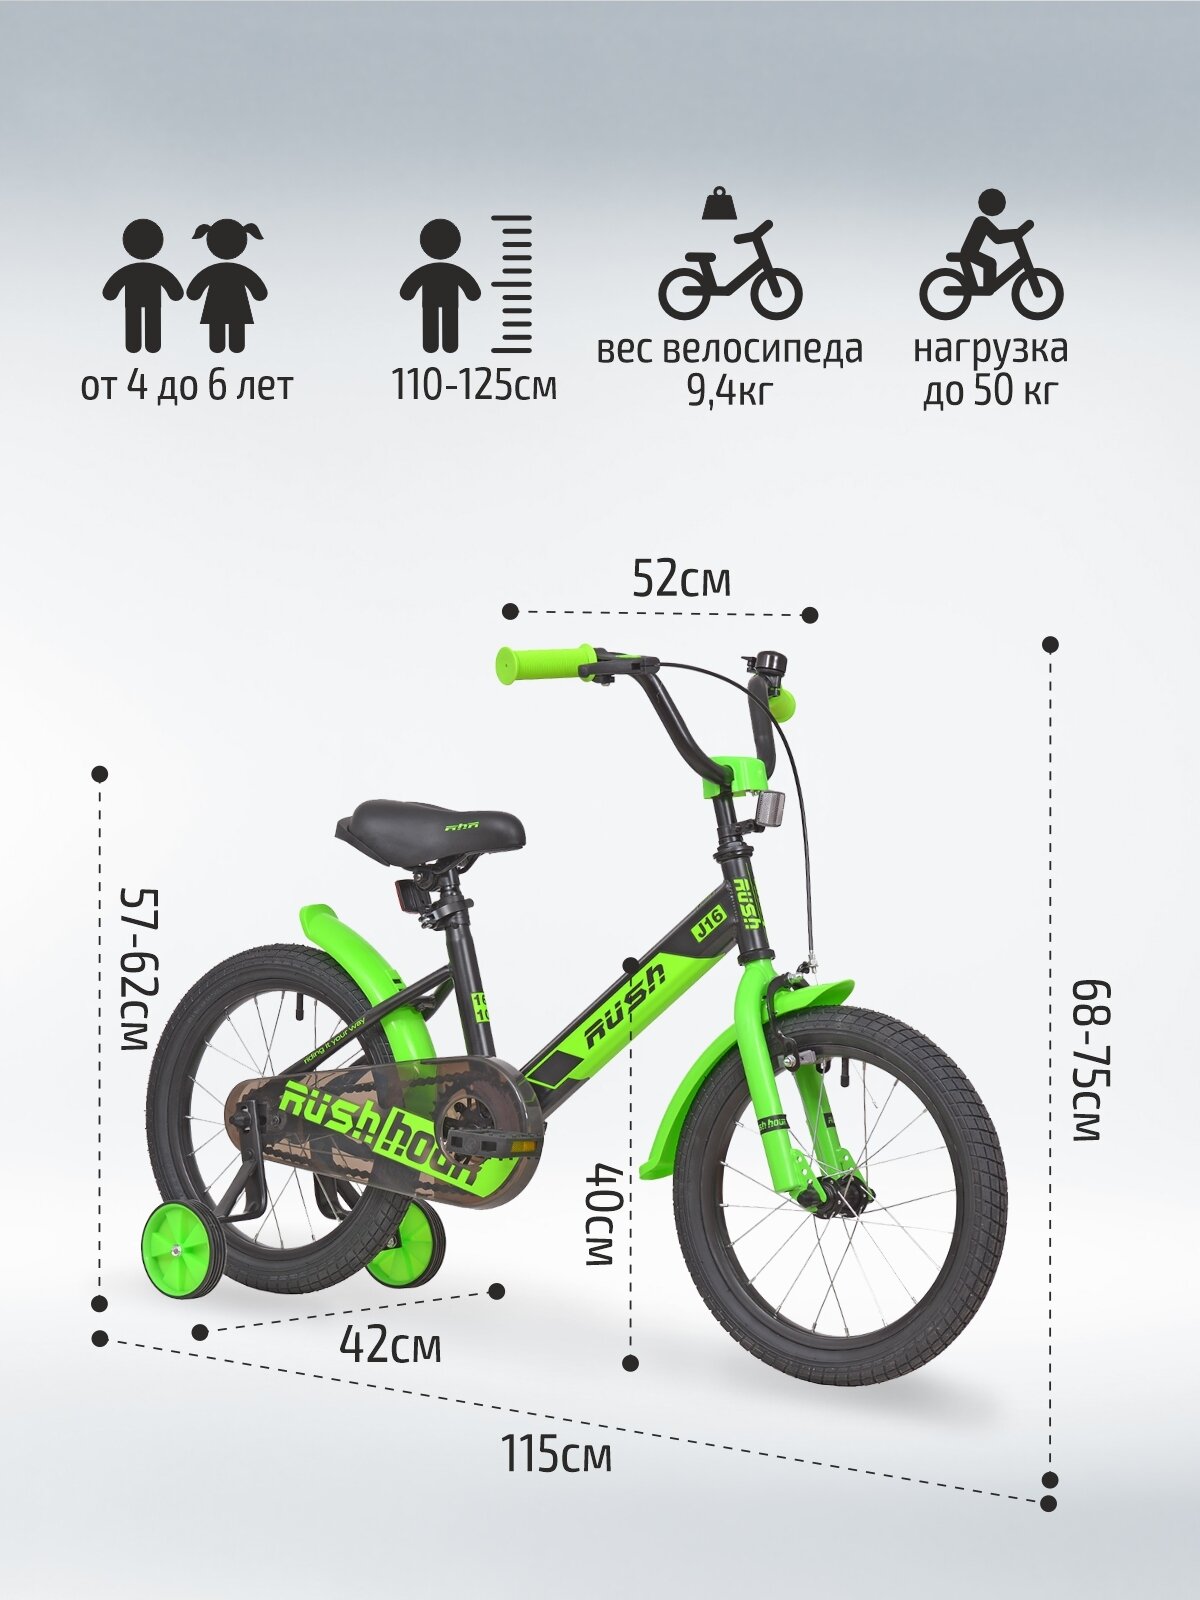 Велосипед двухколесный детский 16" дюймов RUSH HOUR J16 рост 110-125 см черный. Для девочки, для мальчиков, для малышей 4 года, 5 лет, 6 лет, для дошкольников, велик детский, раш